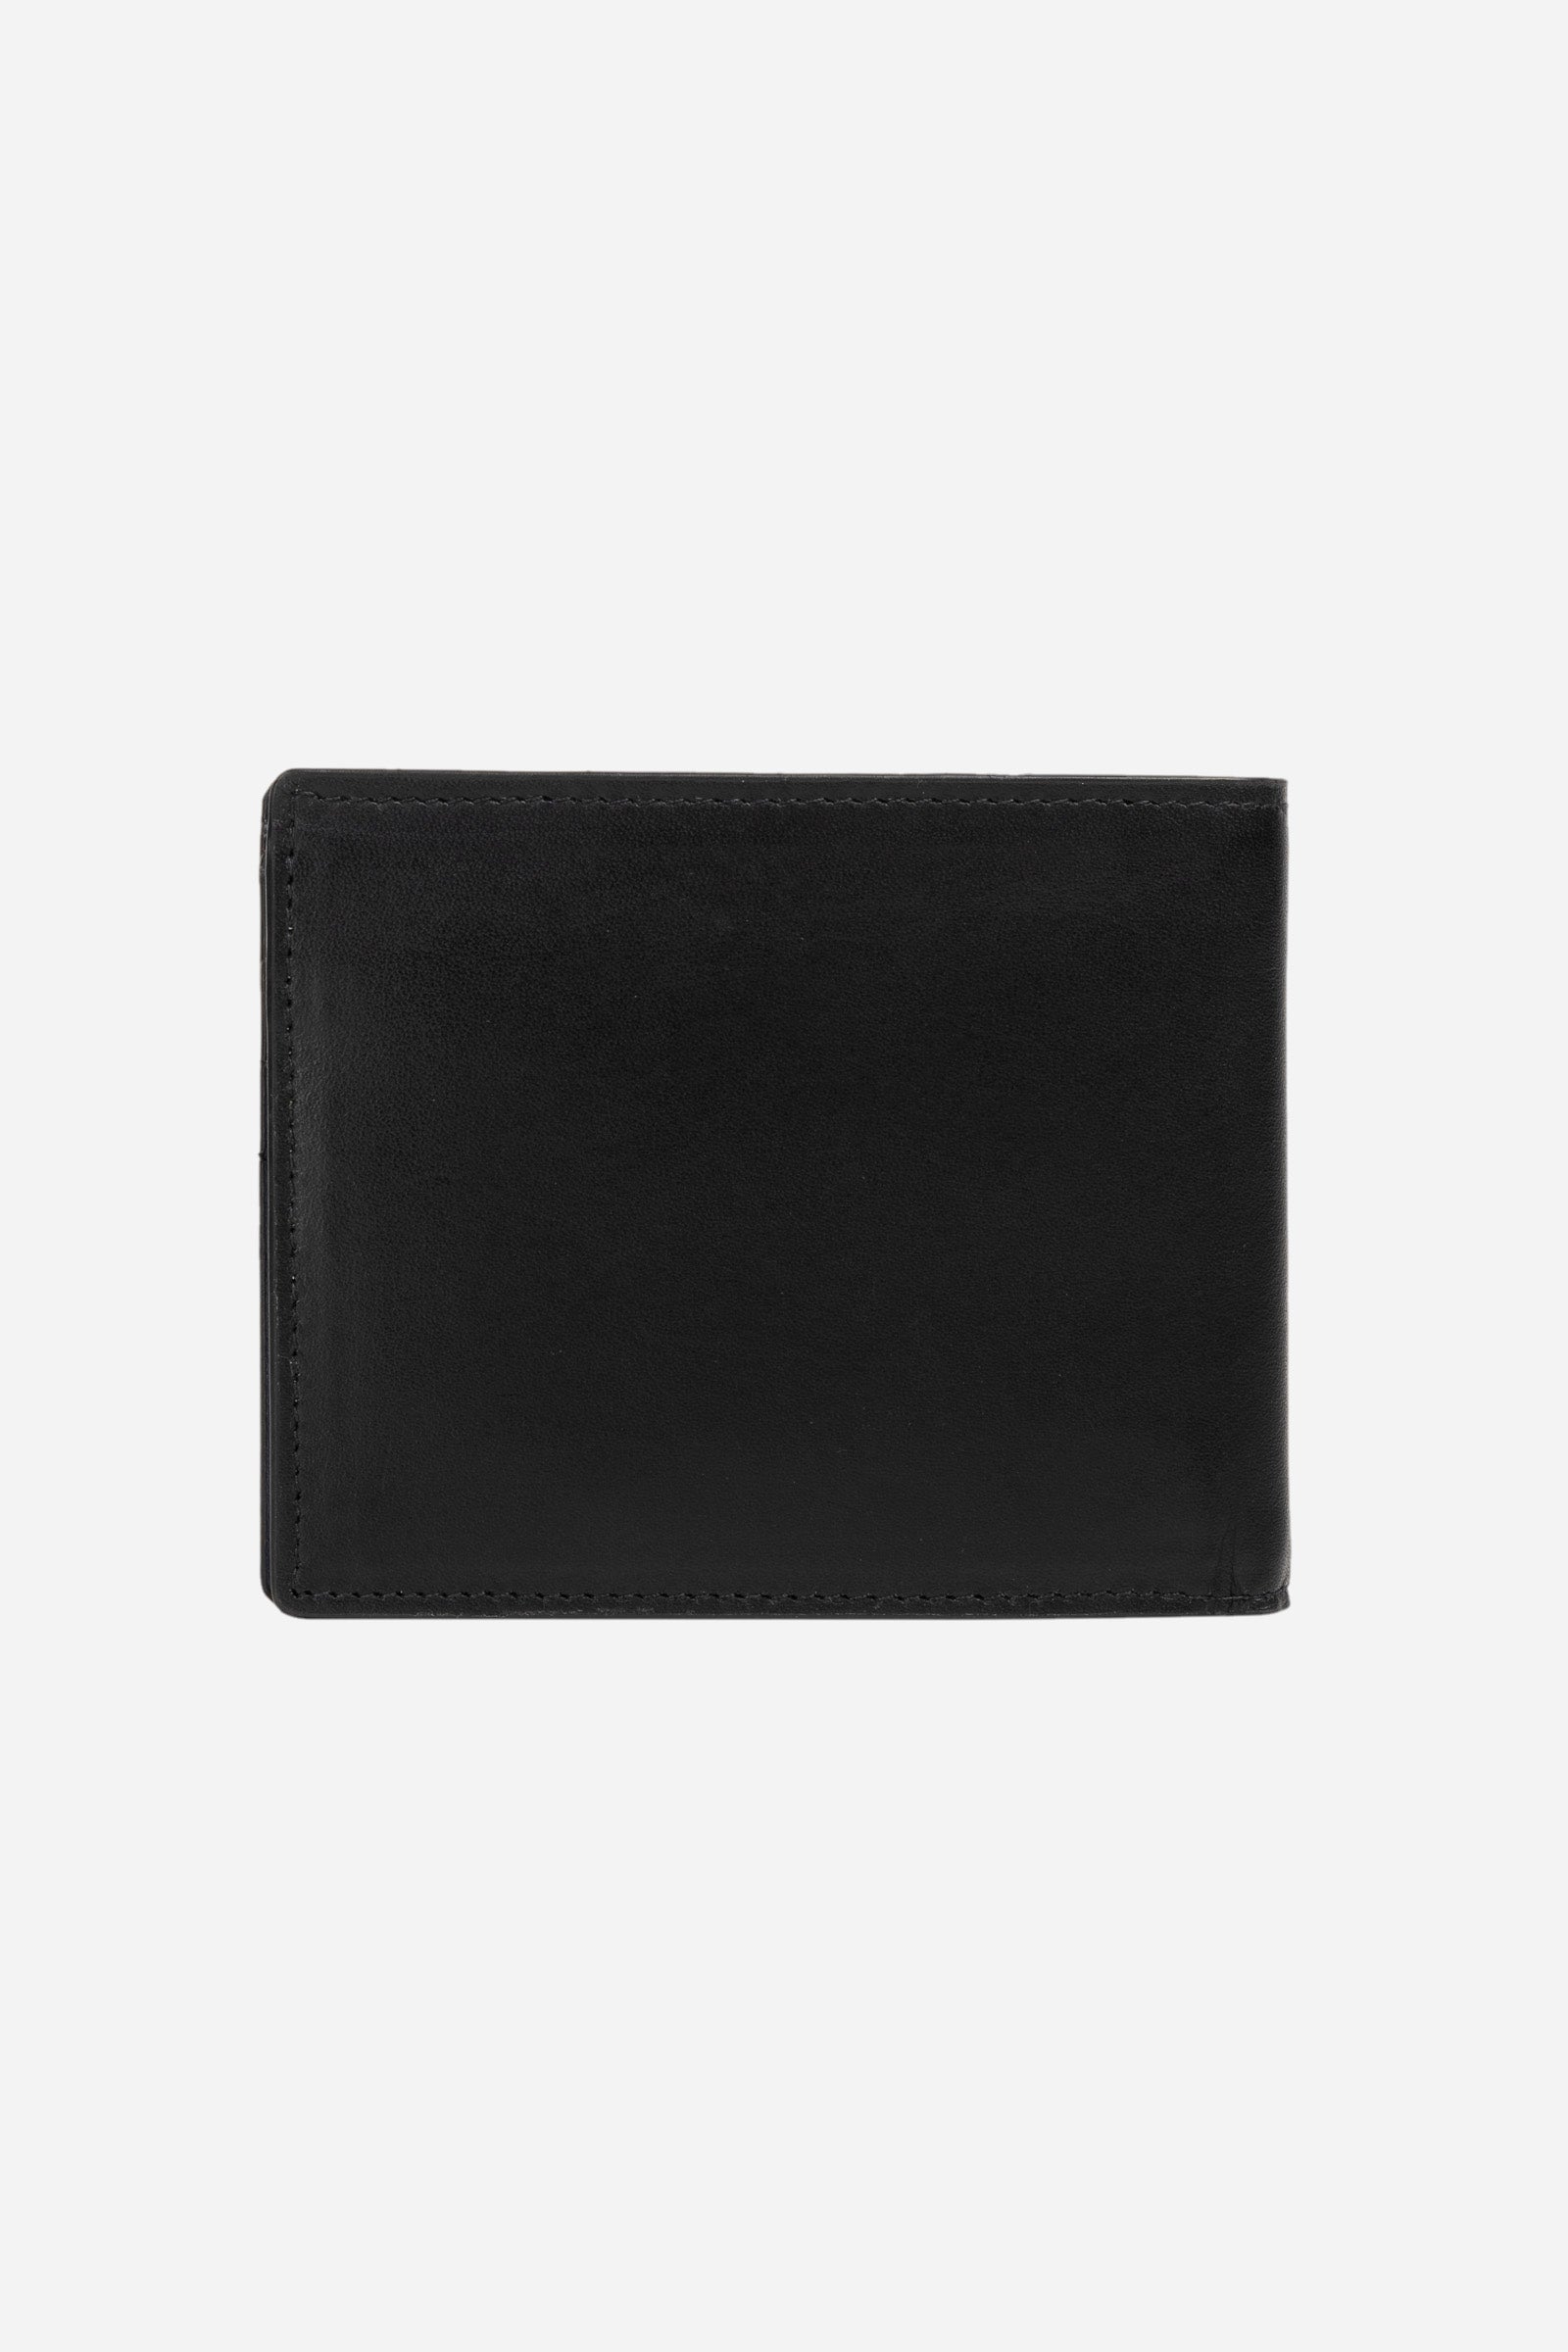 Men's leather wallet - Pablo